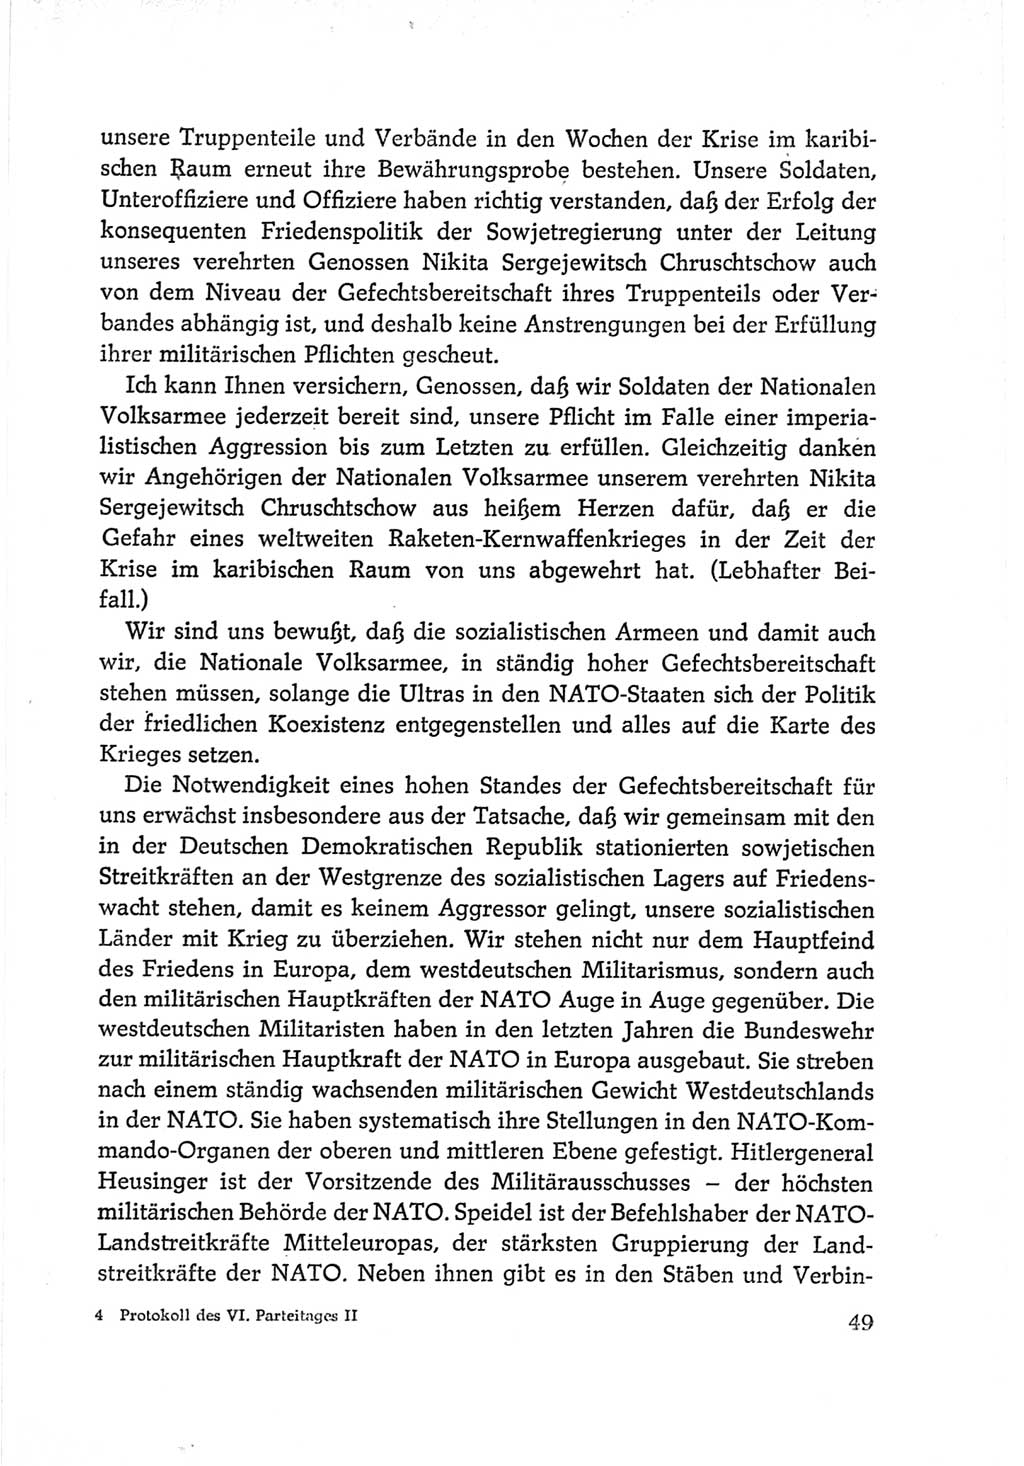 Protokoll der Verhandlungen des Ⅵ. Parteitages der Sozialistischen Einheitspartei Deutschlands (SED) [Deutsche Demokratische Republik (DDR)] 1963, Band Ⅱ, Seite 49 (Prot. Verh. Ⅵ. PT SED DDR 1963, Bd. Ⅱ, S. 49)